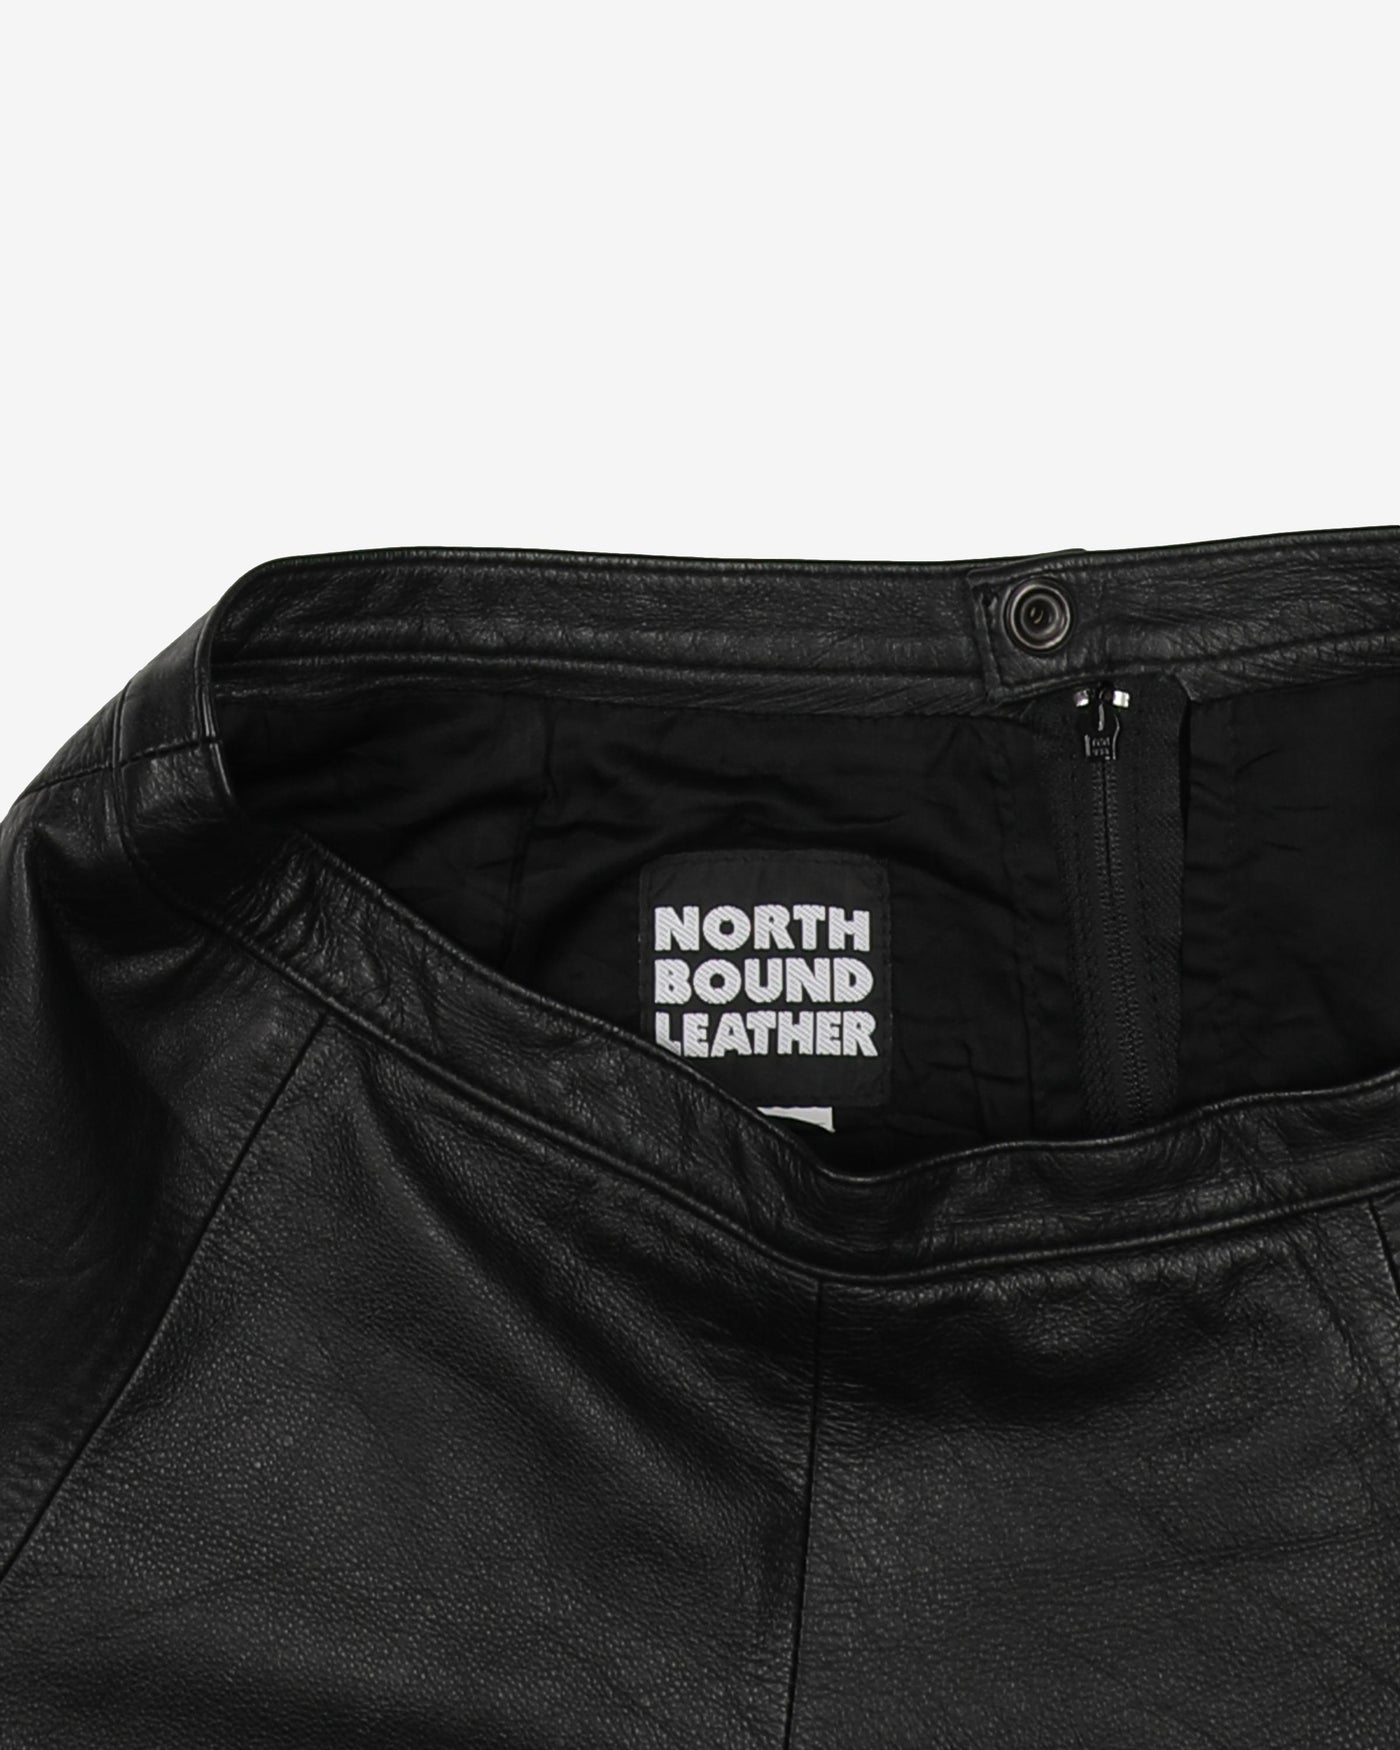 Black Leather Skater-Style Mini Skirt - S